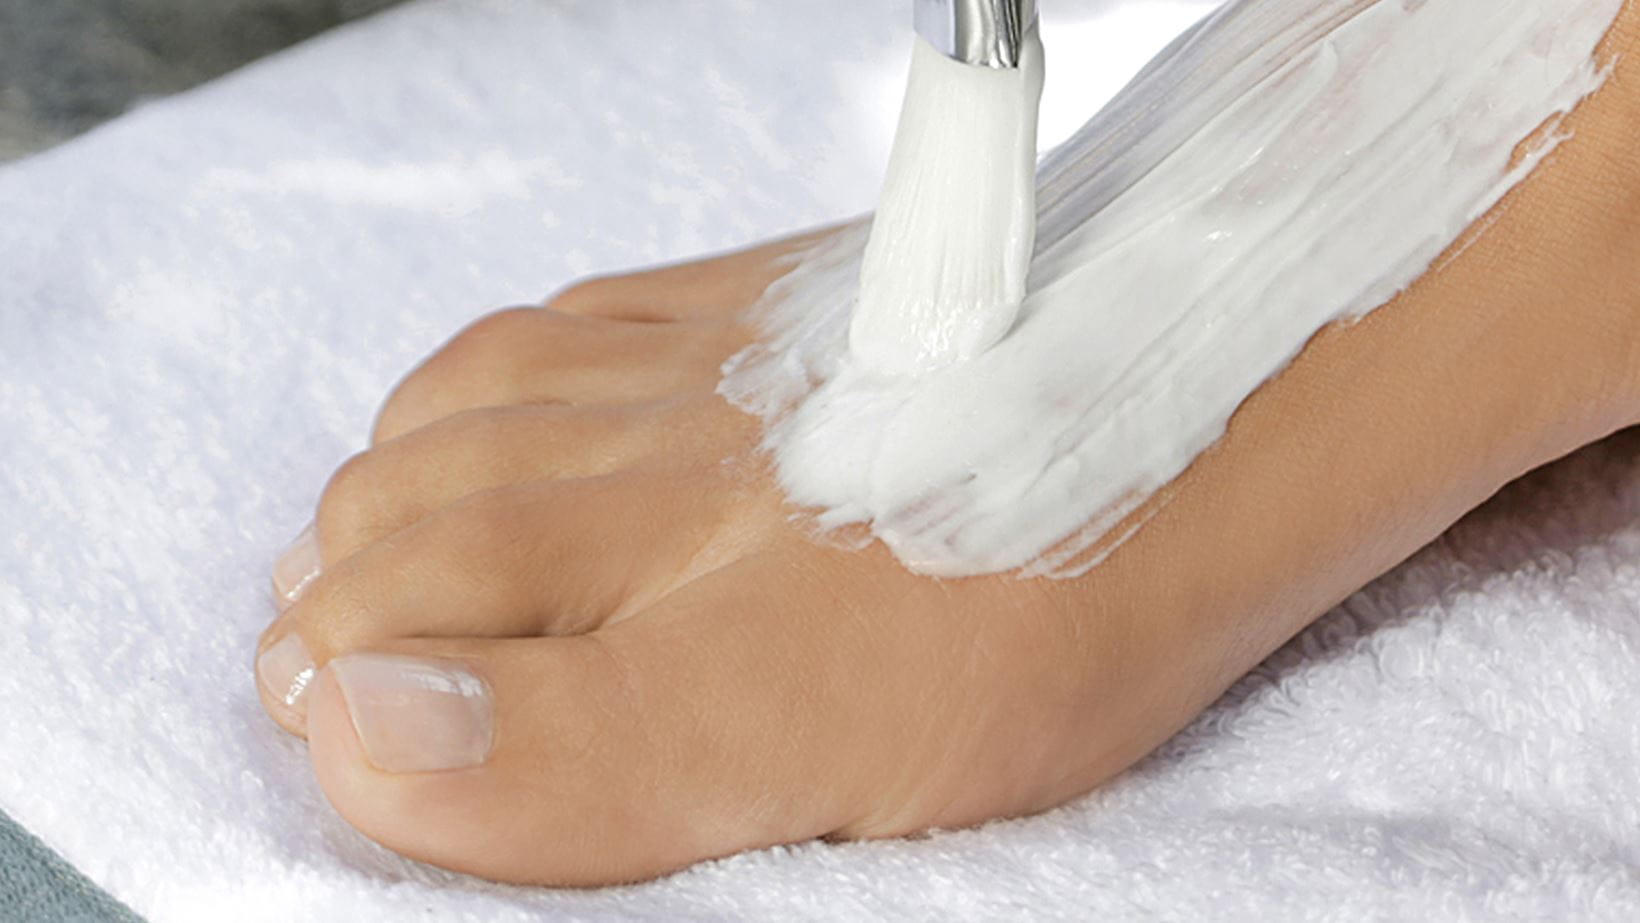 Foot moisturiser